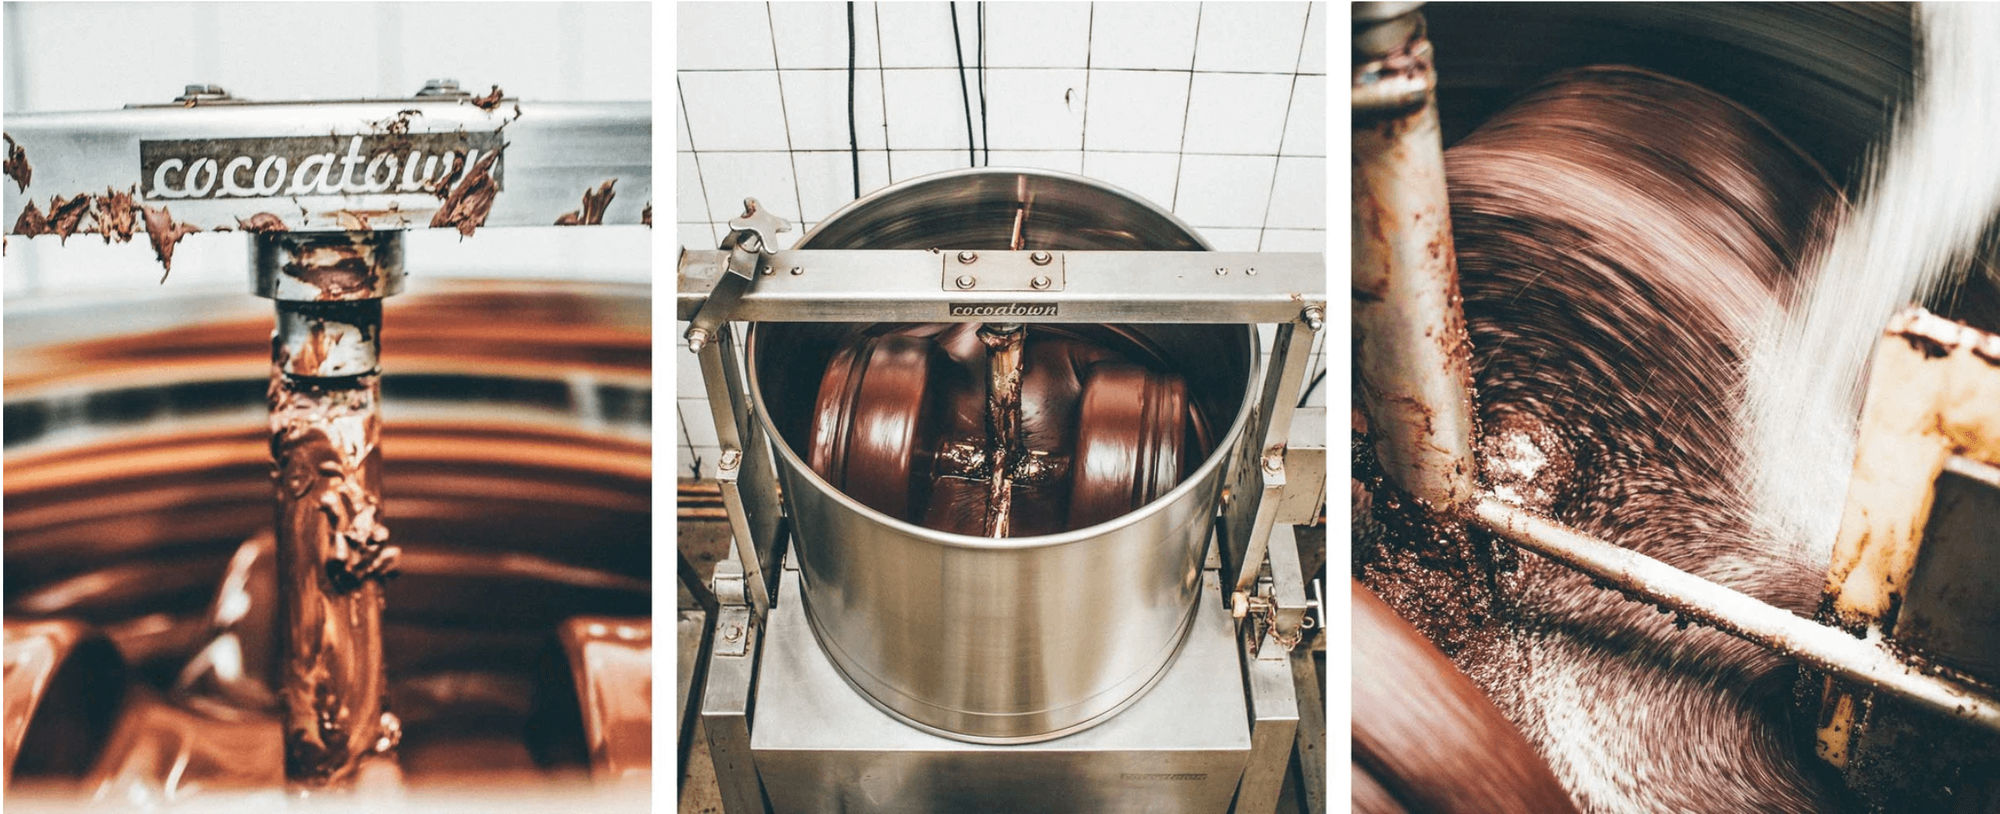 Chocolate making process